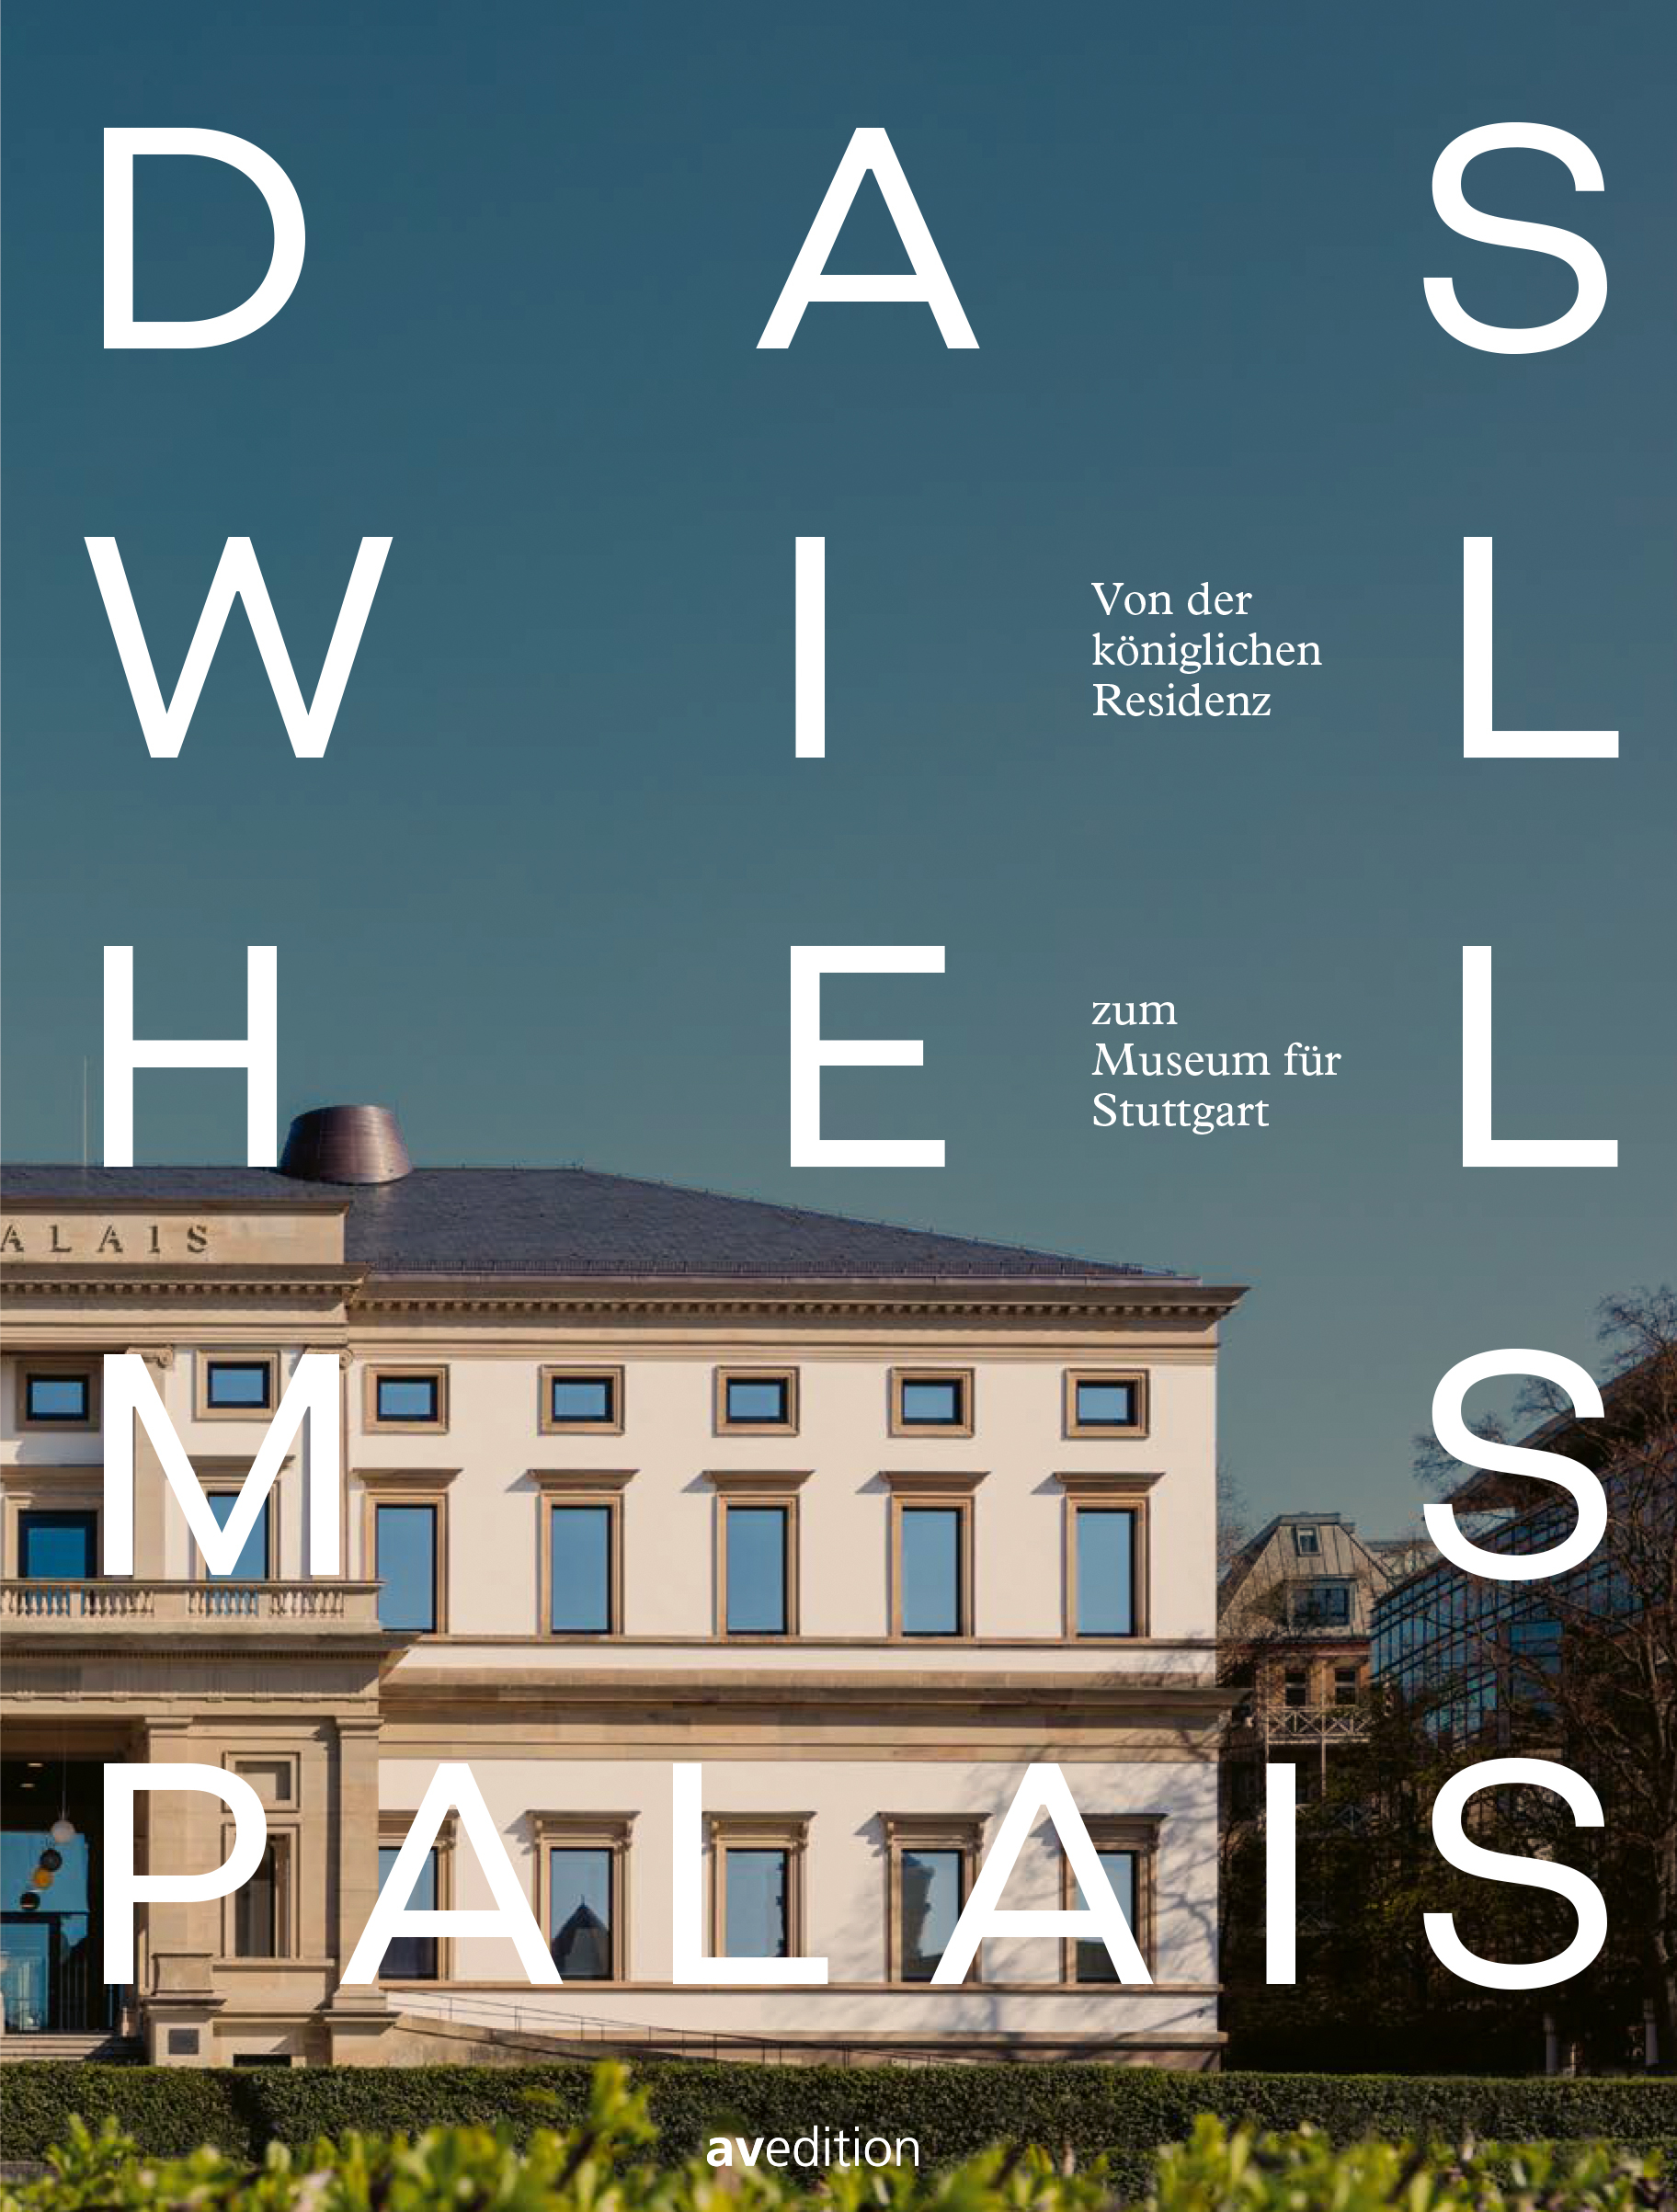 Das Wilhelmspalais – Von der königlichen Residenz zum Museum für Stuttgart